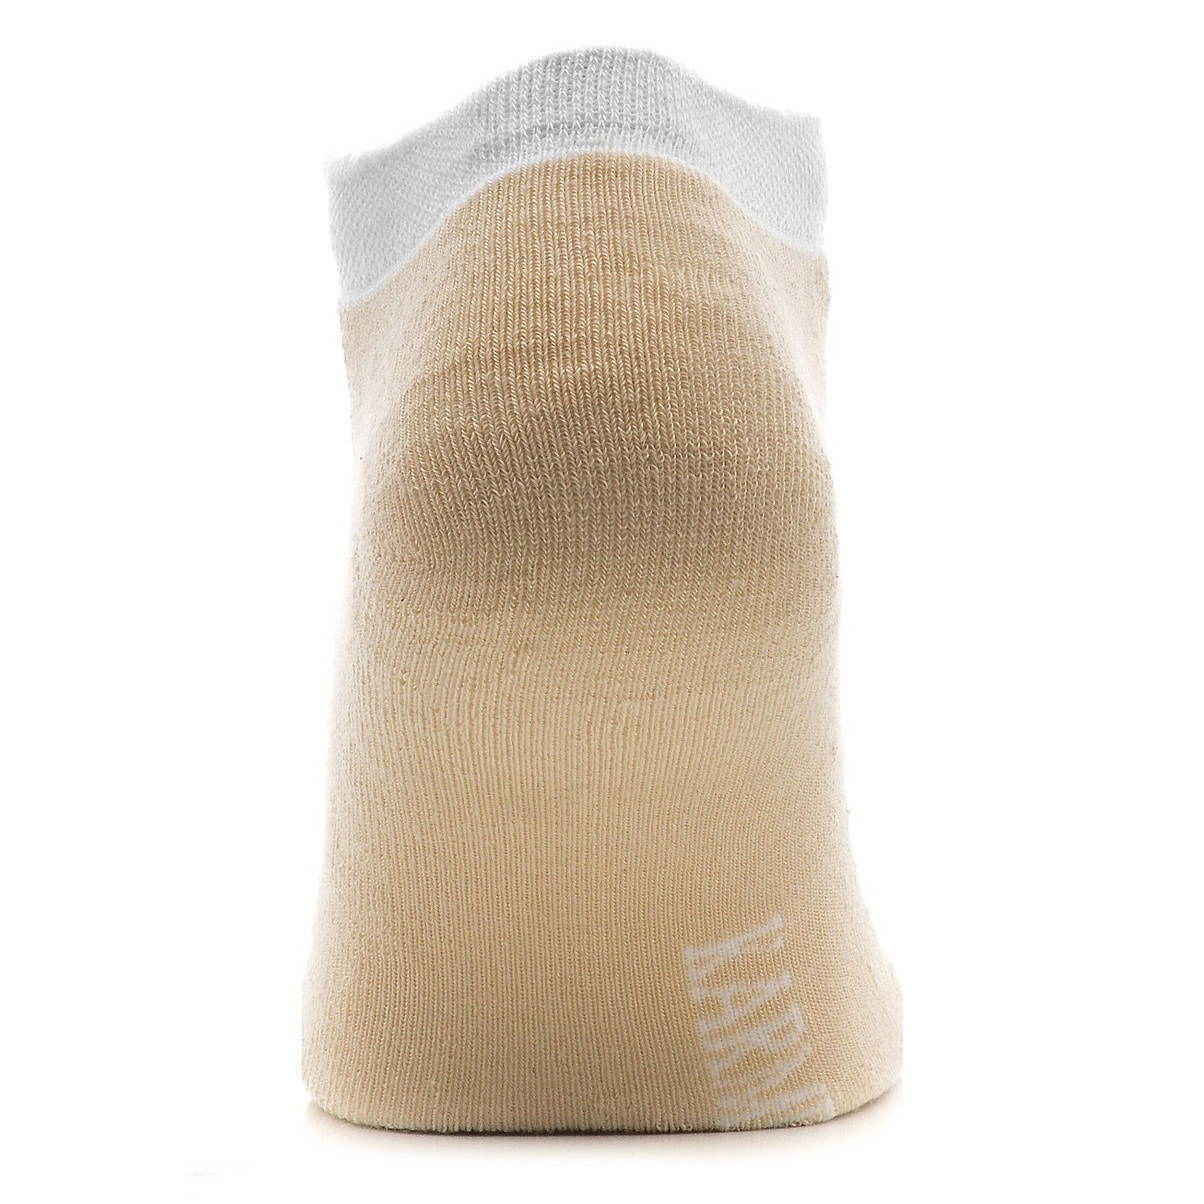 Носки Karmen MiniCalzaSport носки beig 1, цвет бежевый, размер 35-39 - фото 2